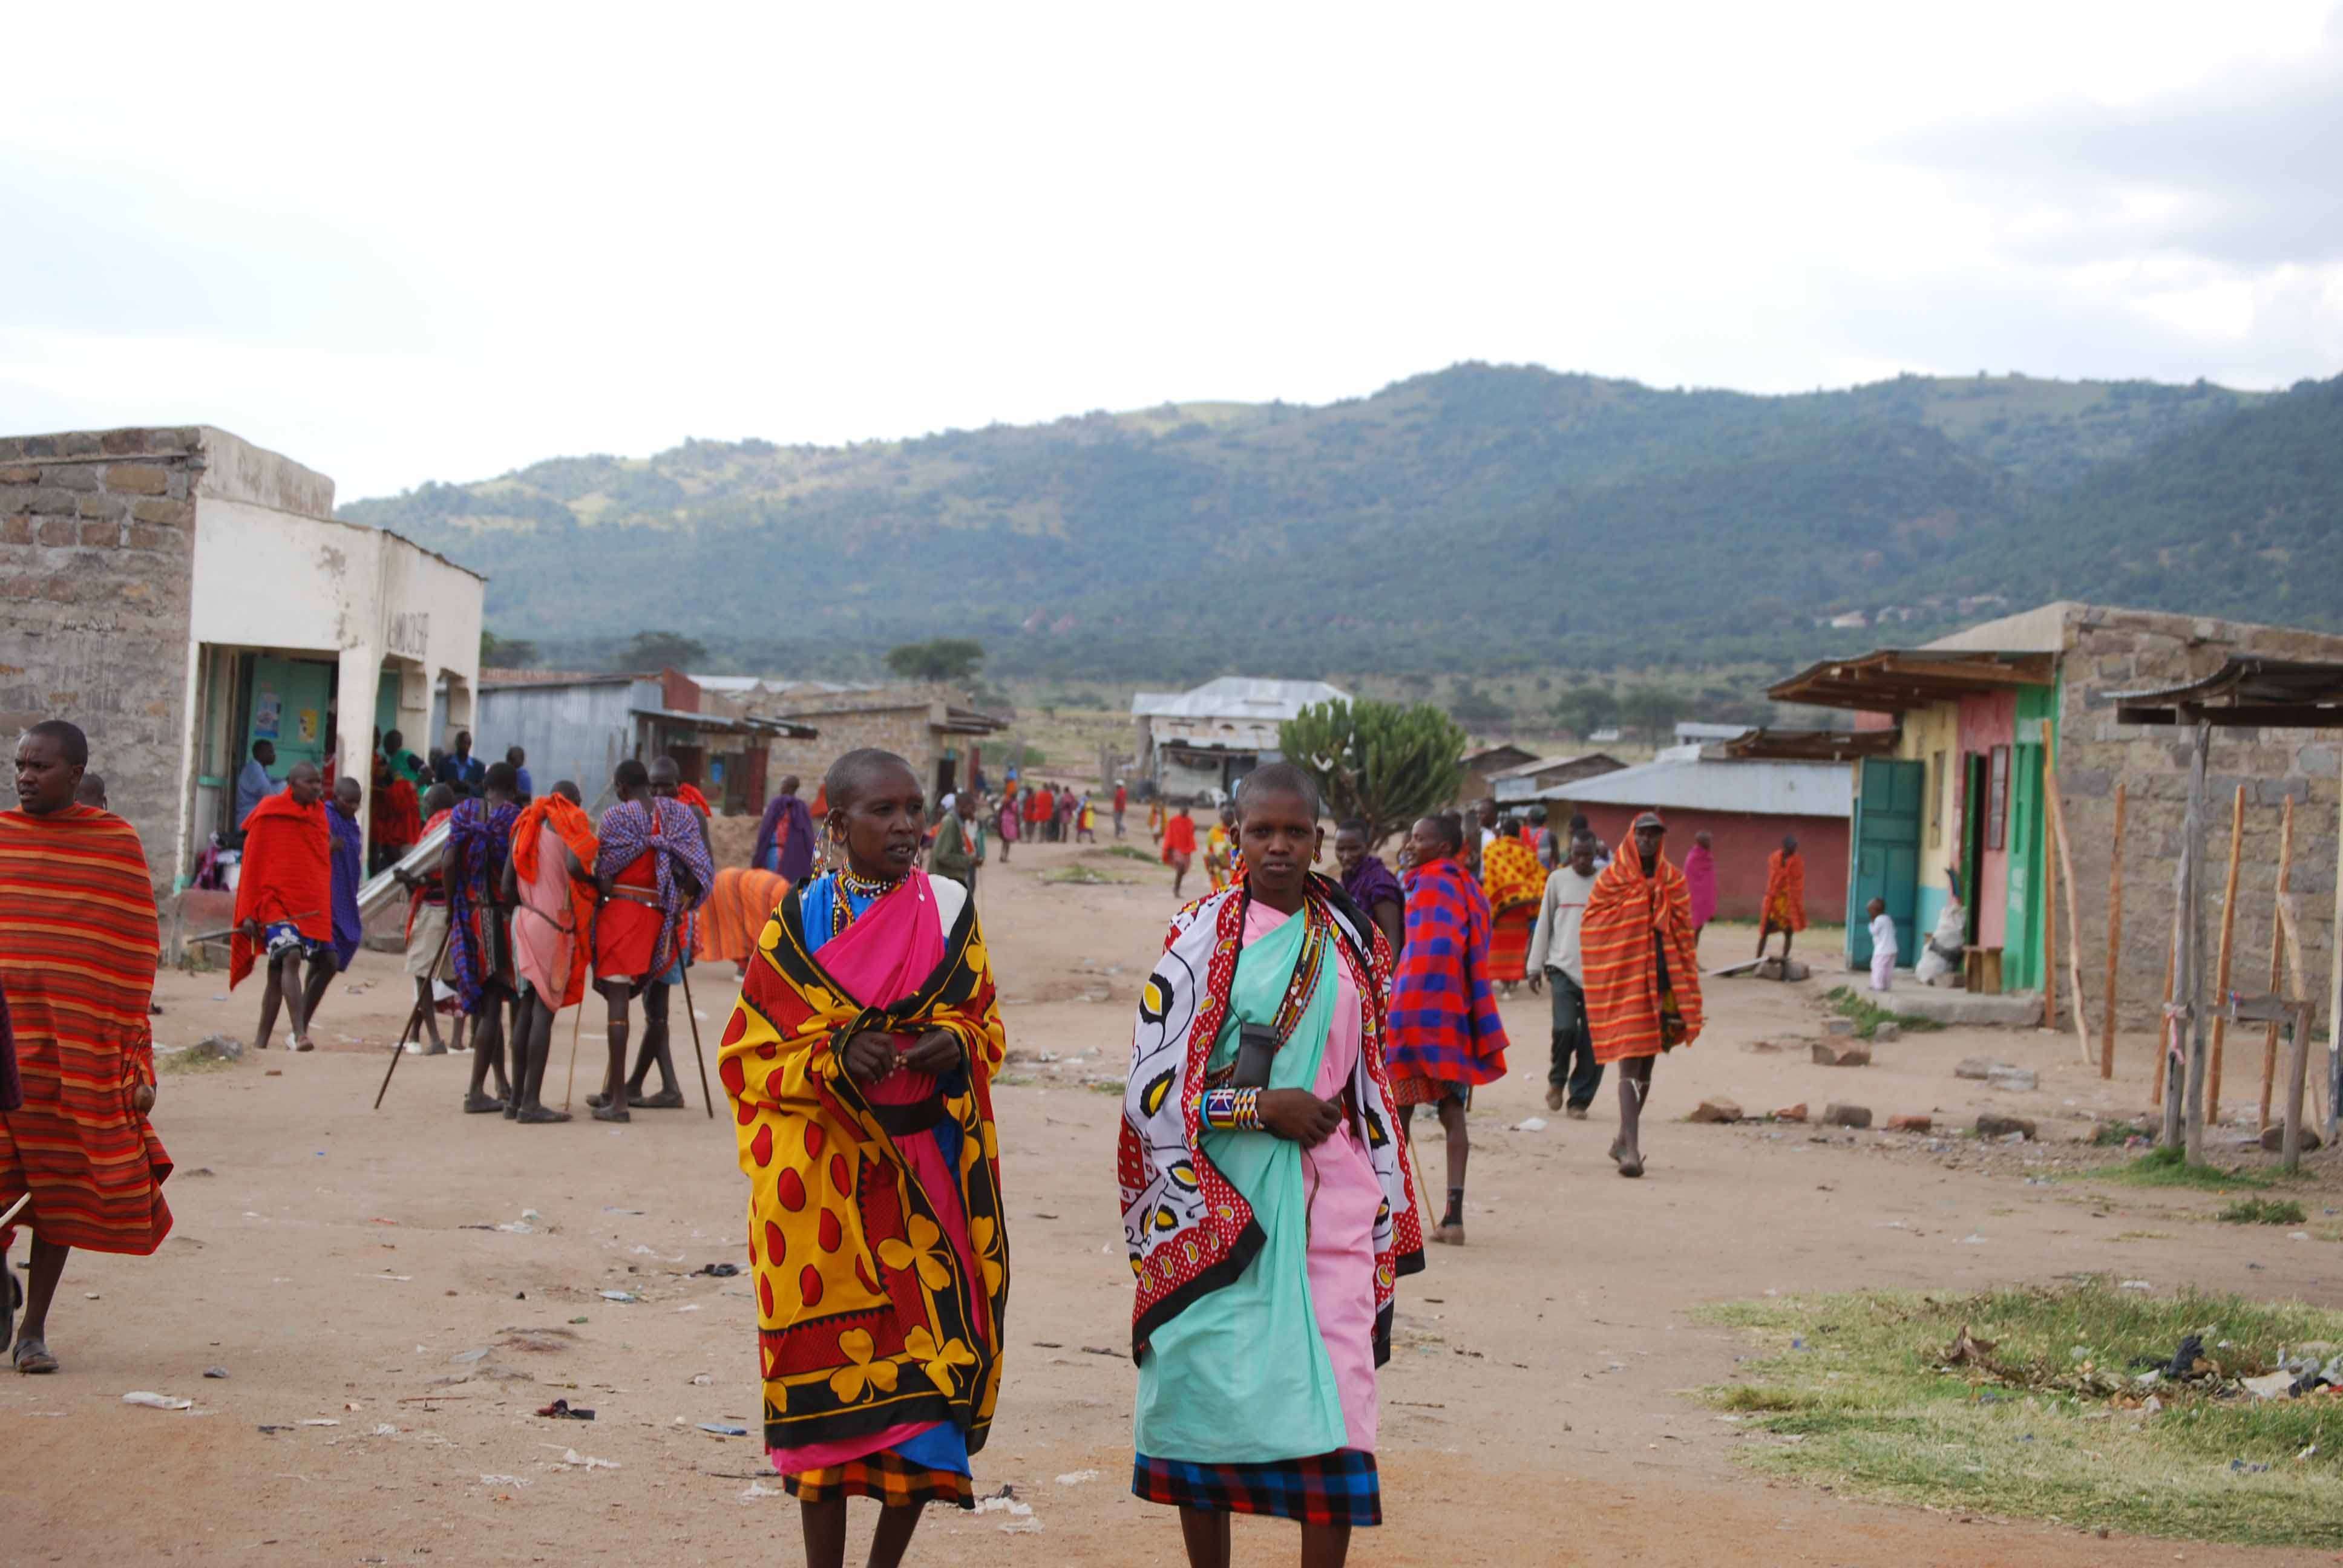 Regreso al Mara - Kenia - Blogs de Kenia - El mercado masai, un intento fallido de ver el cruce y algunas mariposas (22)